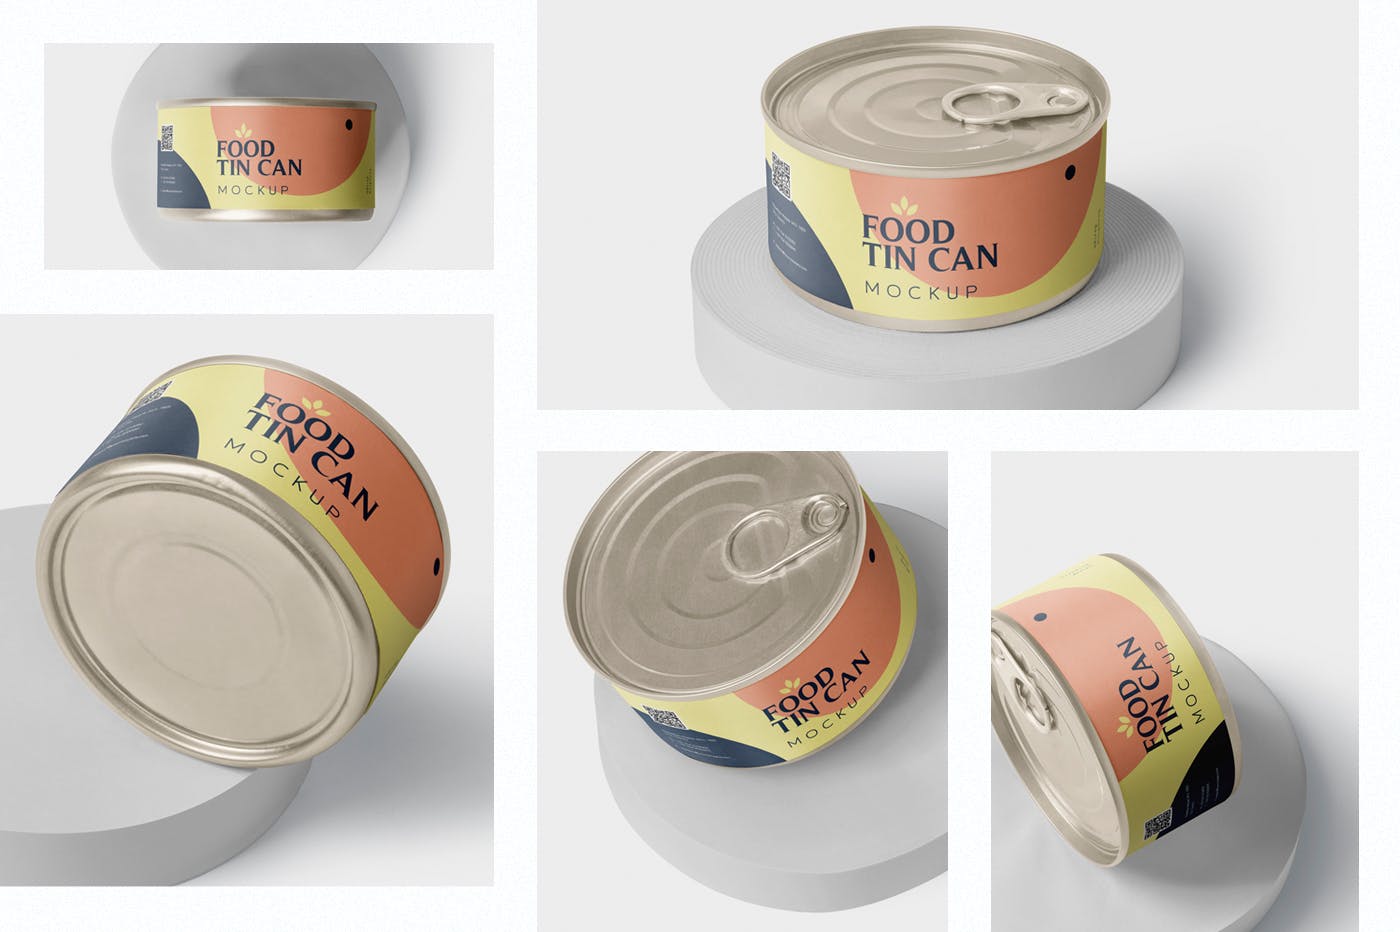 迷你型食品罐头外观设计图样机模板 Food Tin Can